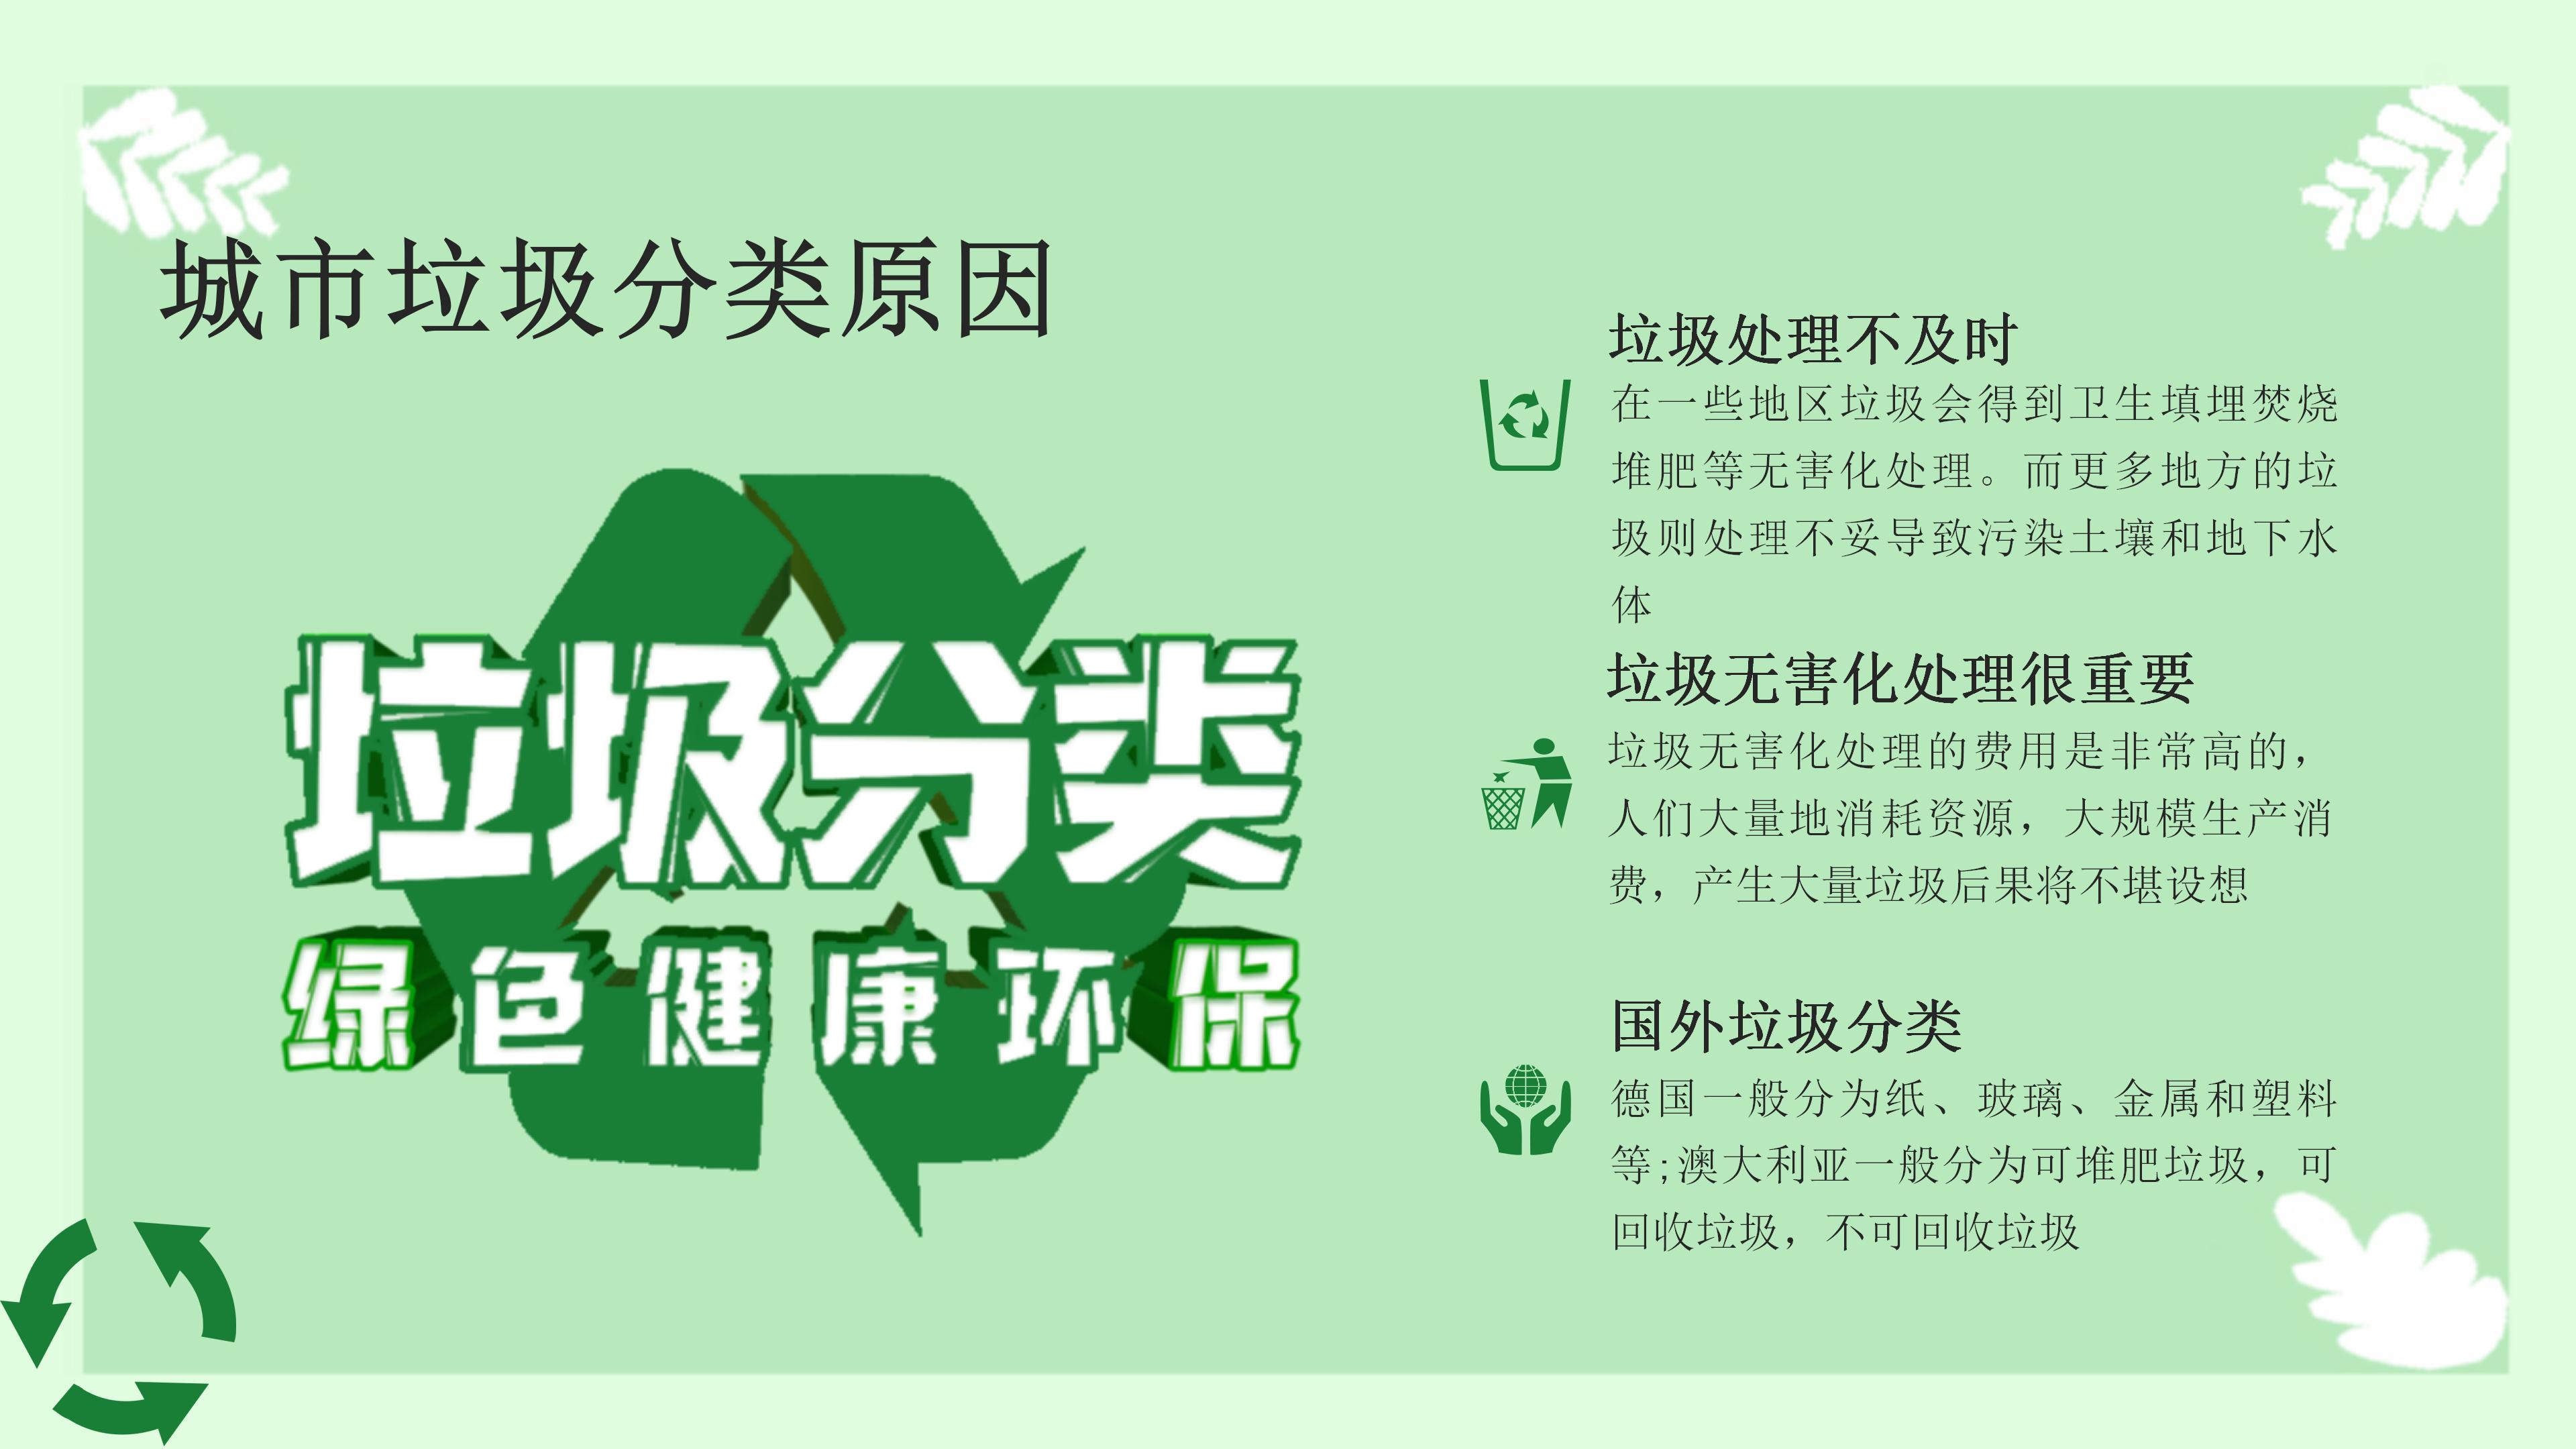 绿色清新漫画风城市垃圾分类环保宣传PPT模板